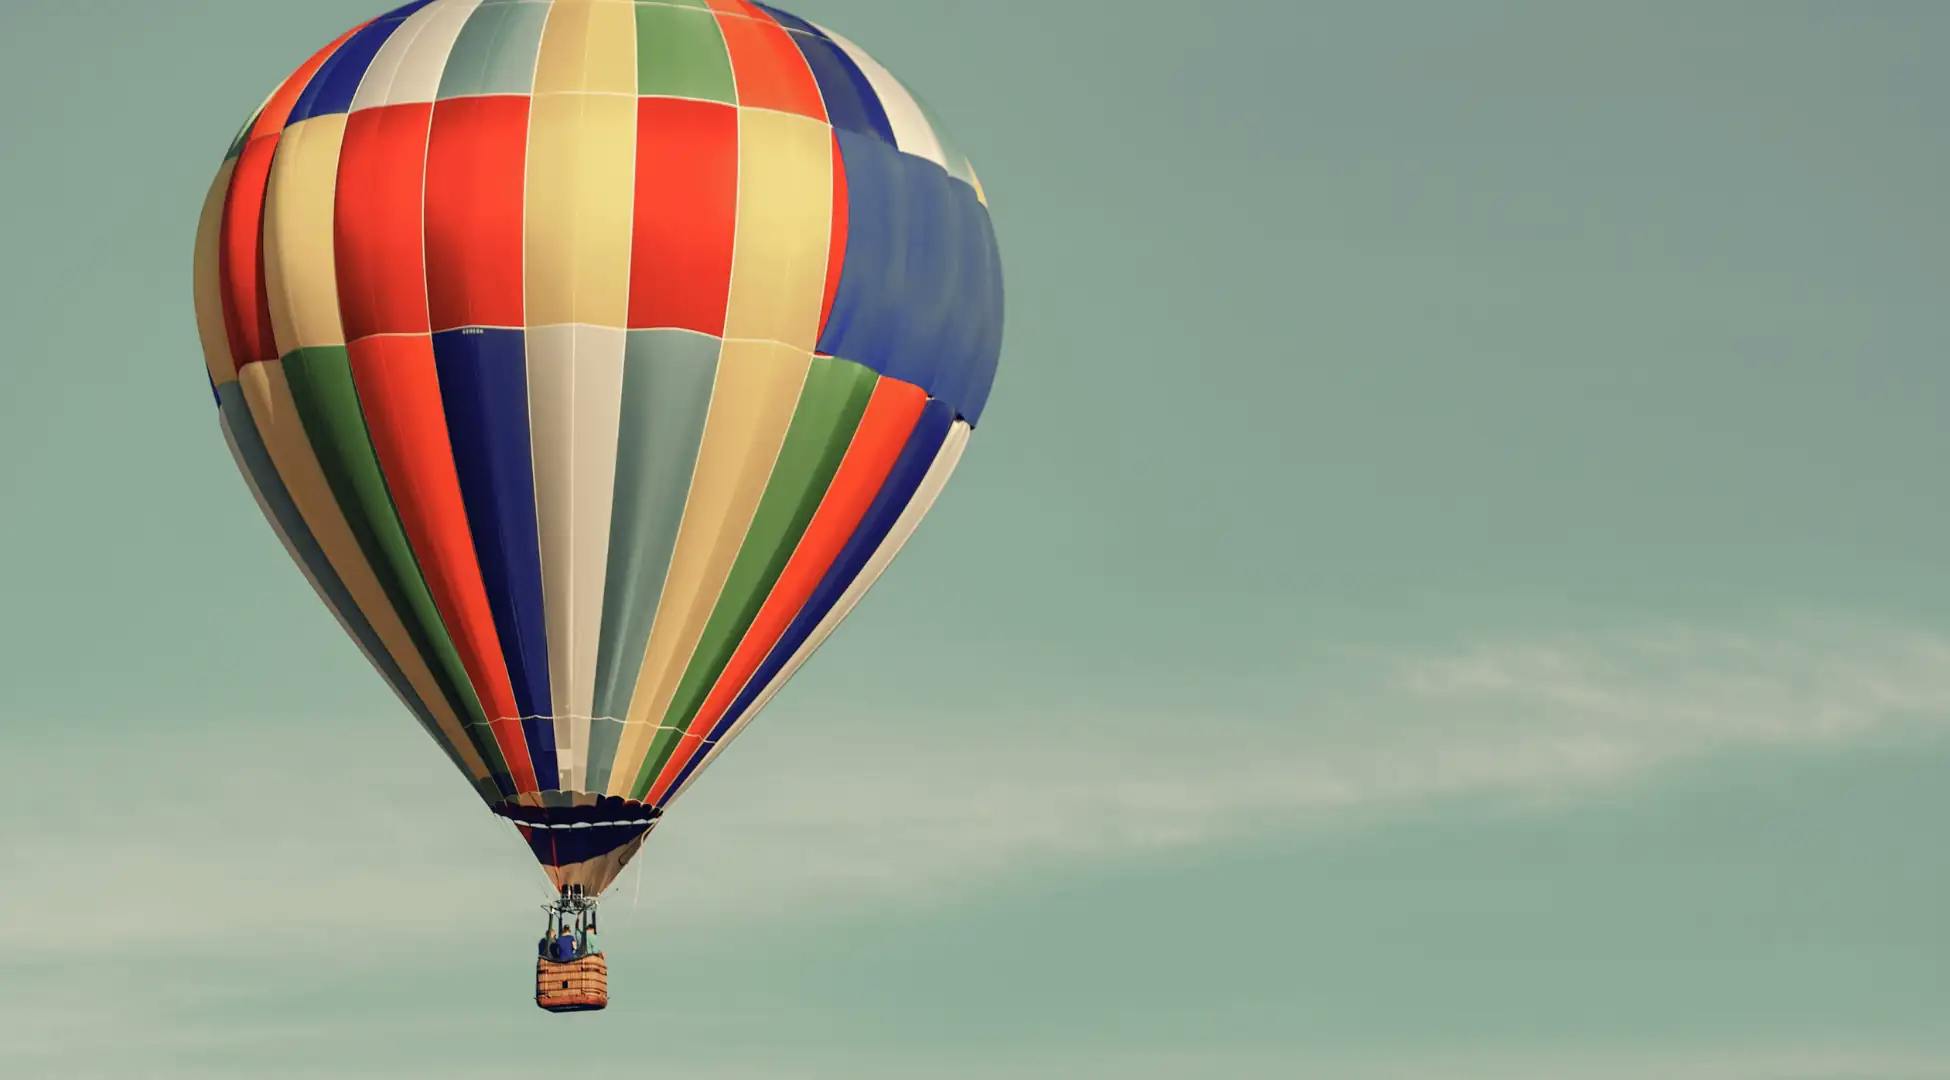 Vol en montgolfière, une expérience aérienne majestueuse offerte par Pop'in.